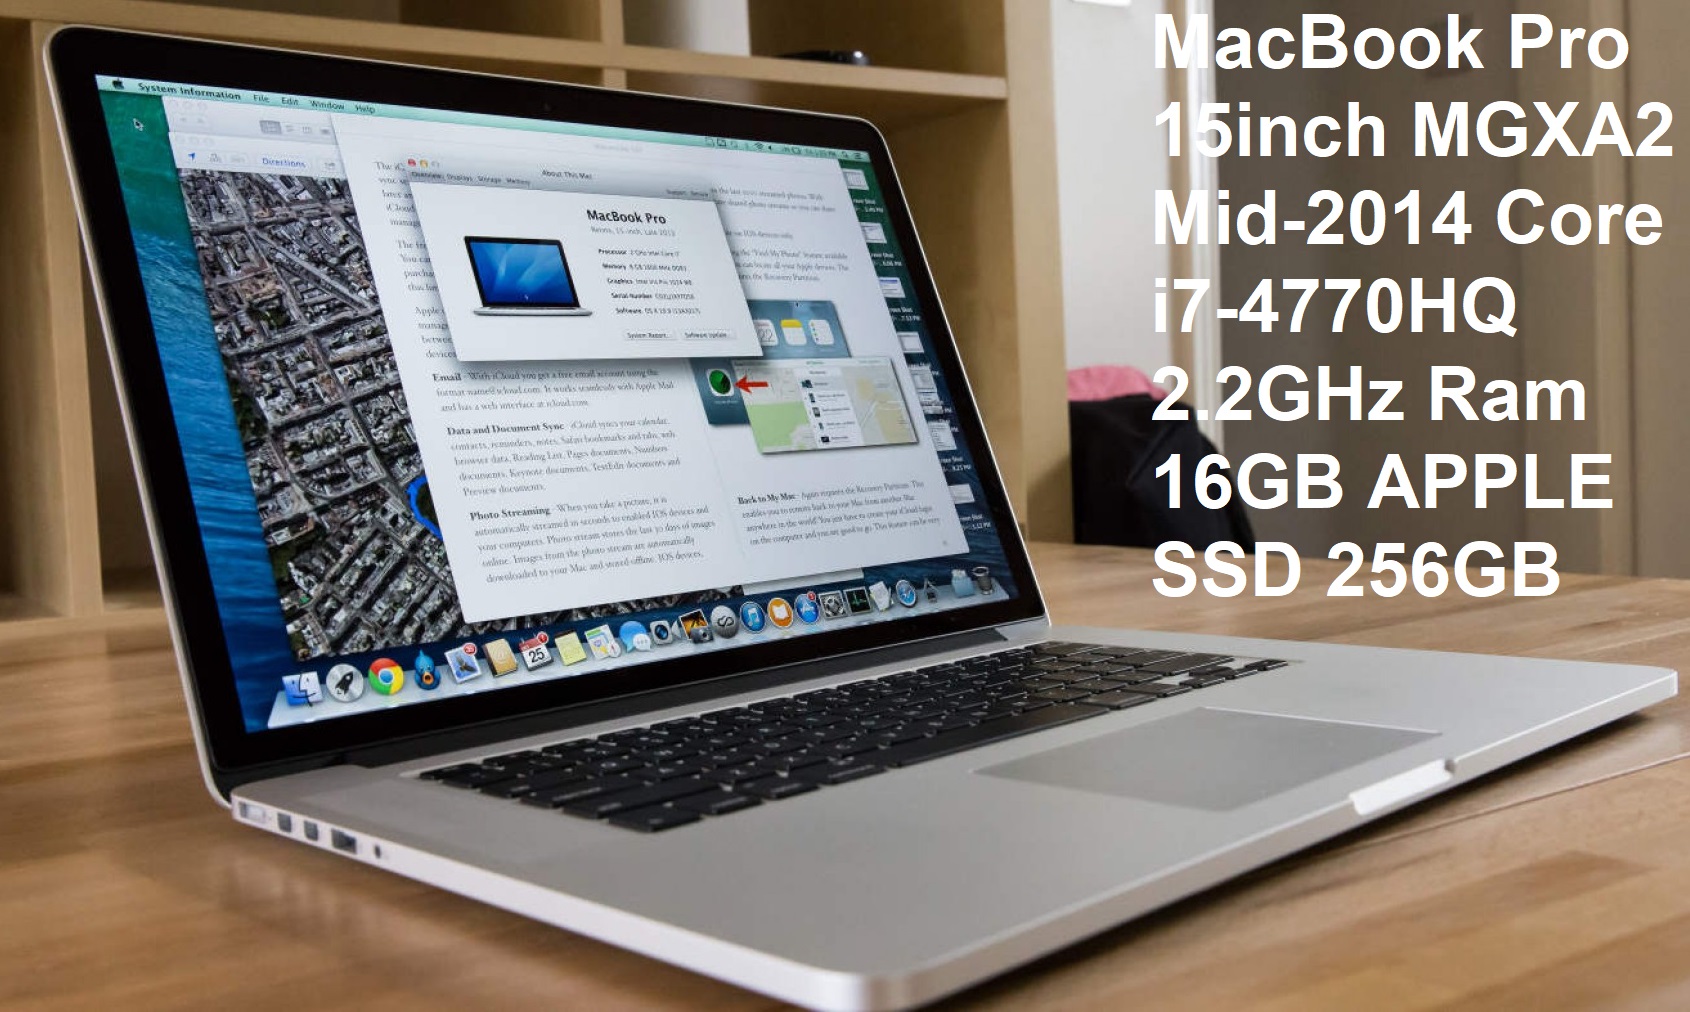 MacBook Pro 15inch MGXA2 Mid-2014 Core i7-4770HQ 2.2GHz Ram 16GB APPLE SSD 256GB